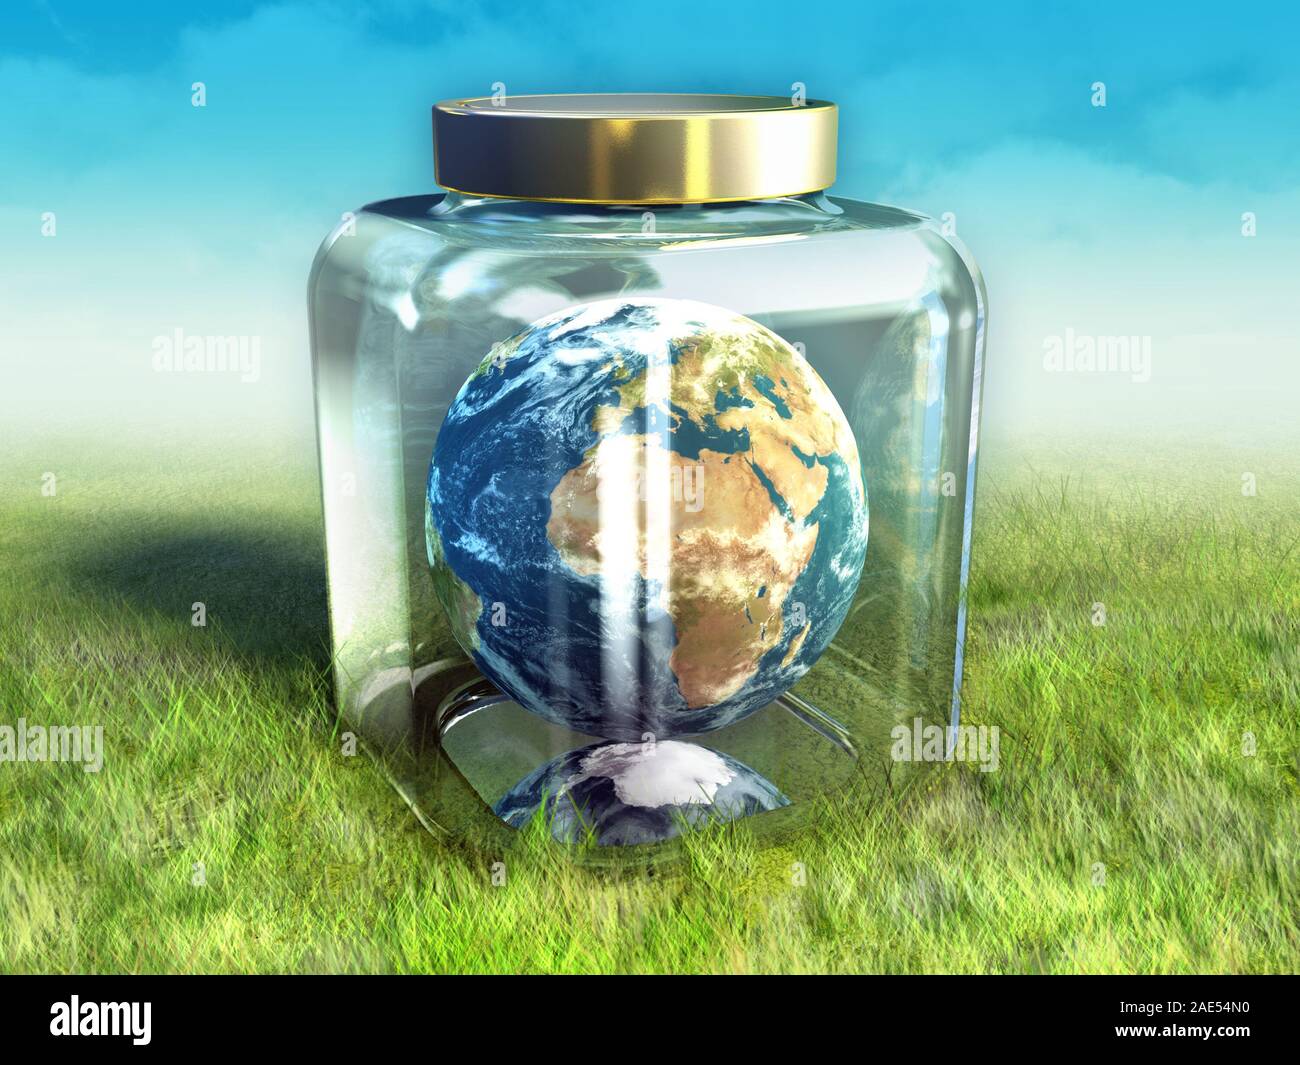 La planète Terre est tenue à l'intérieur d'un bocal en verre pour la protéger. Illustration numérique. Banque D'Images